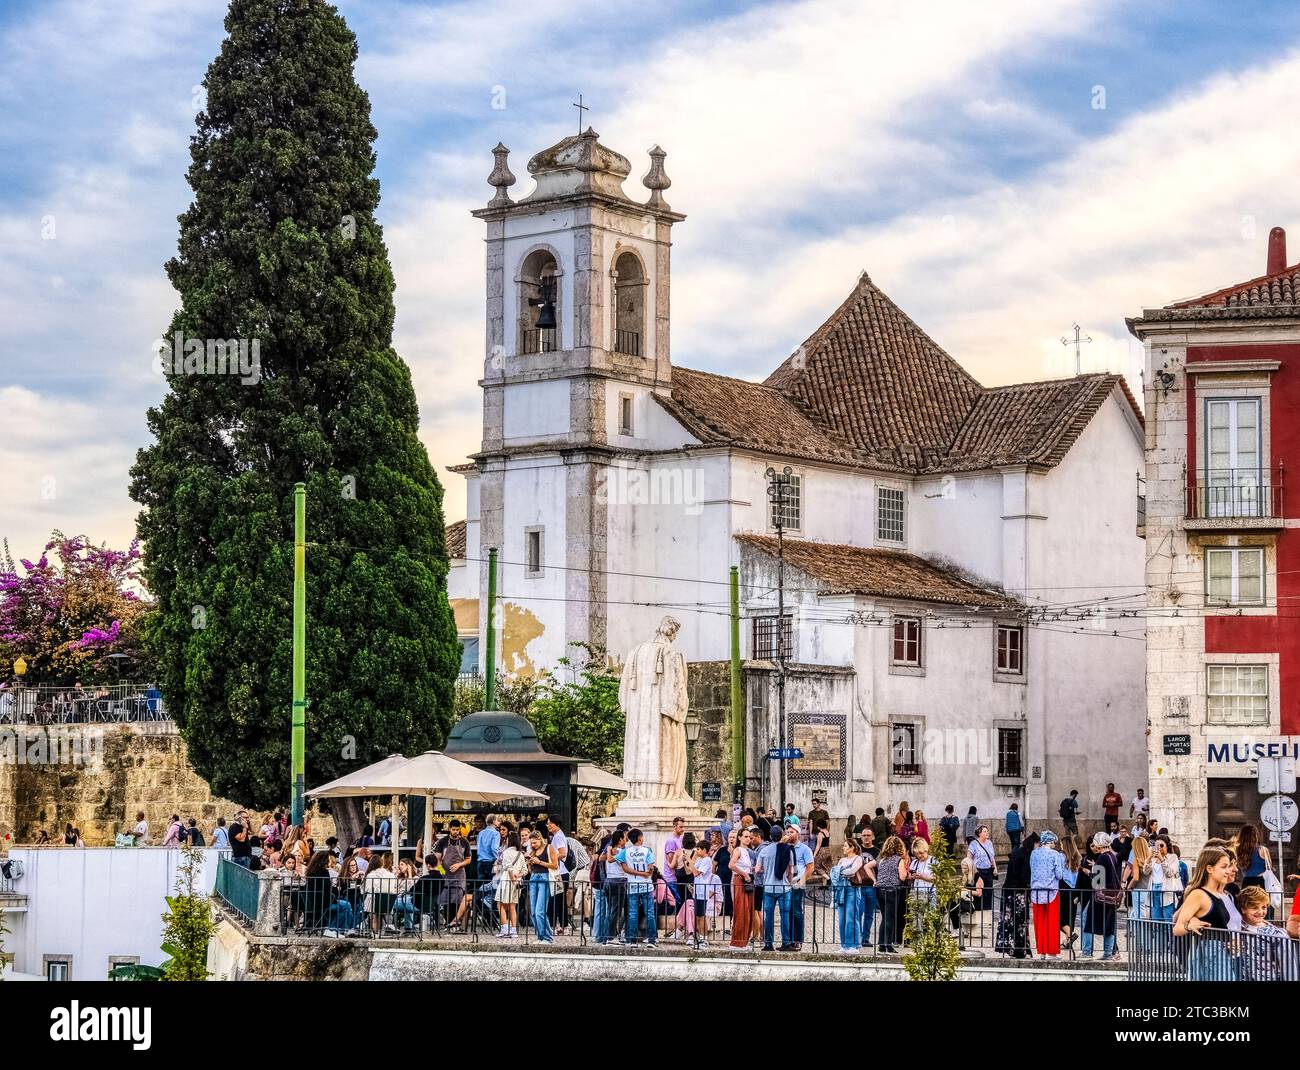 Il punto panoramico di Portas do Sol nel centro storico di Alfama, nel quartiere di Lisbona, Portogallo Foto Stock